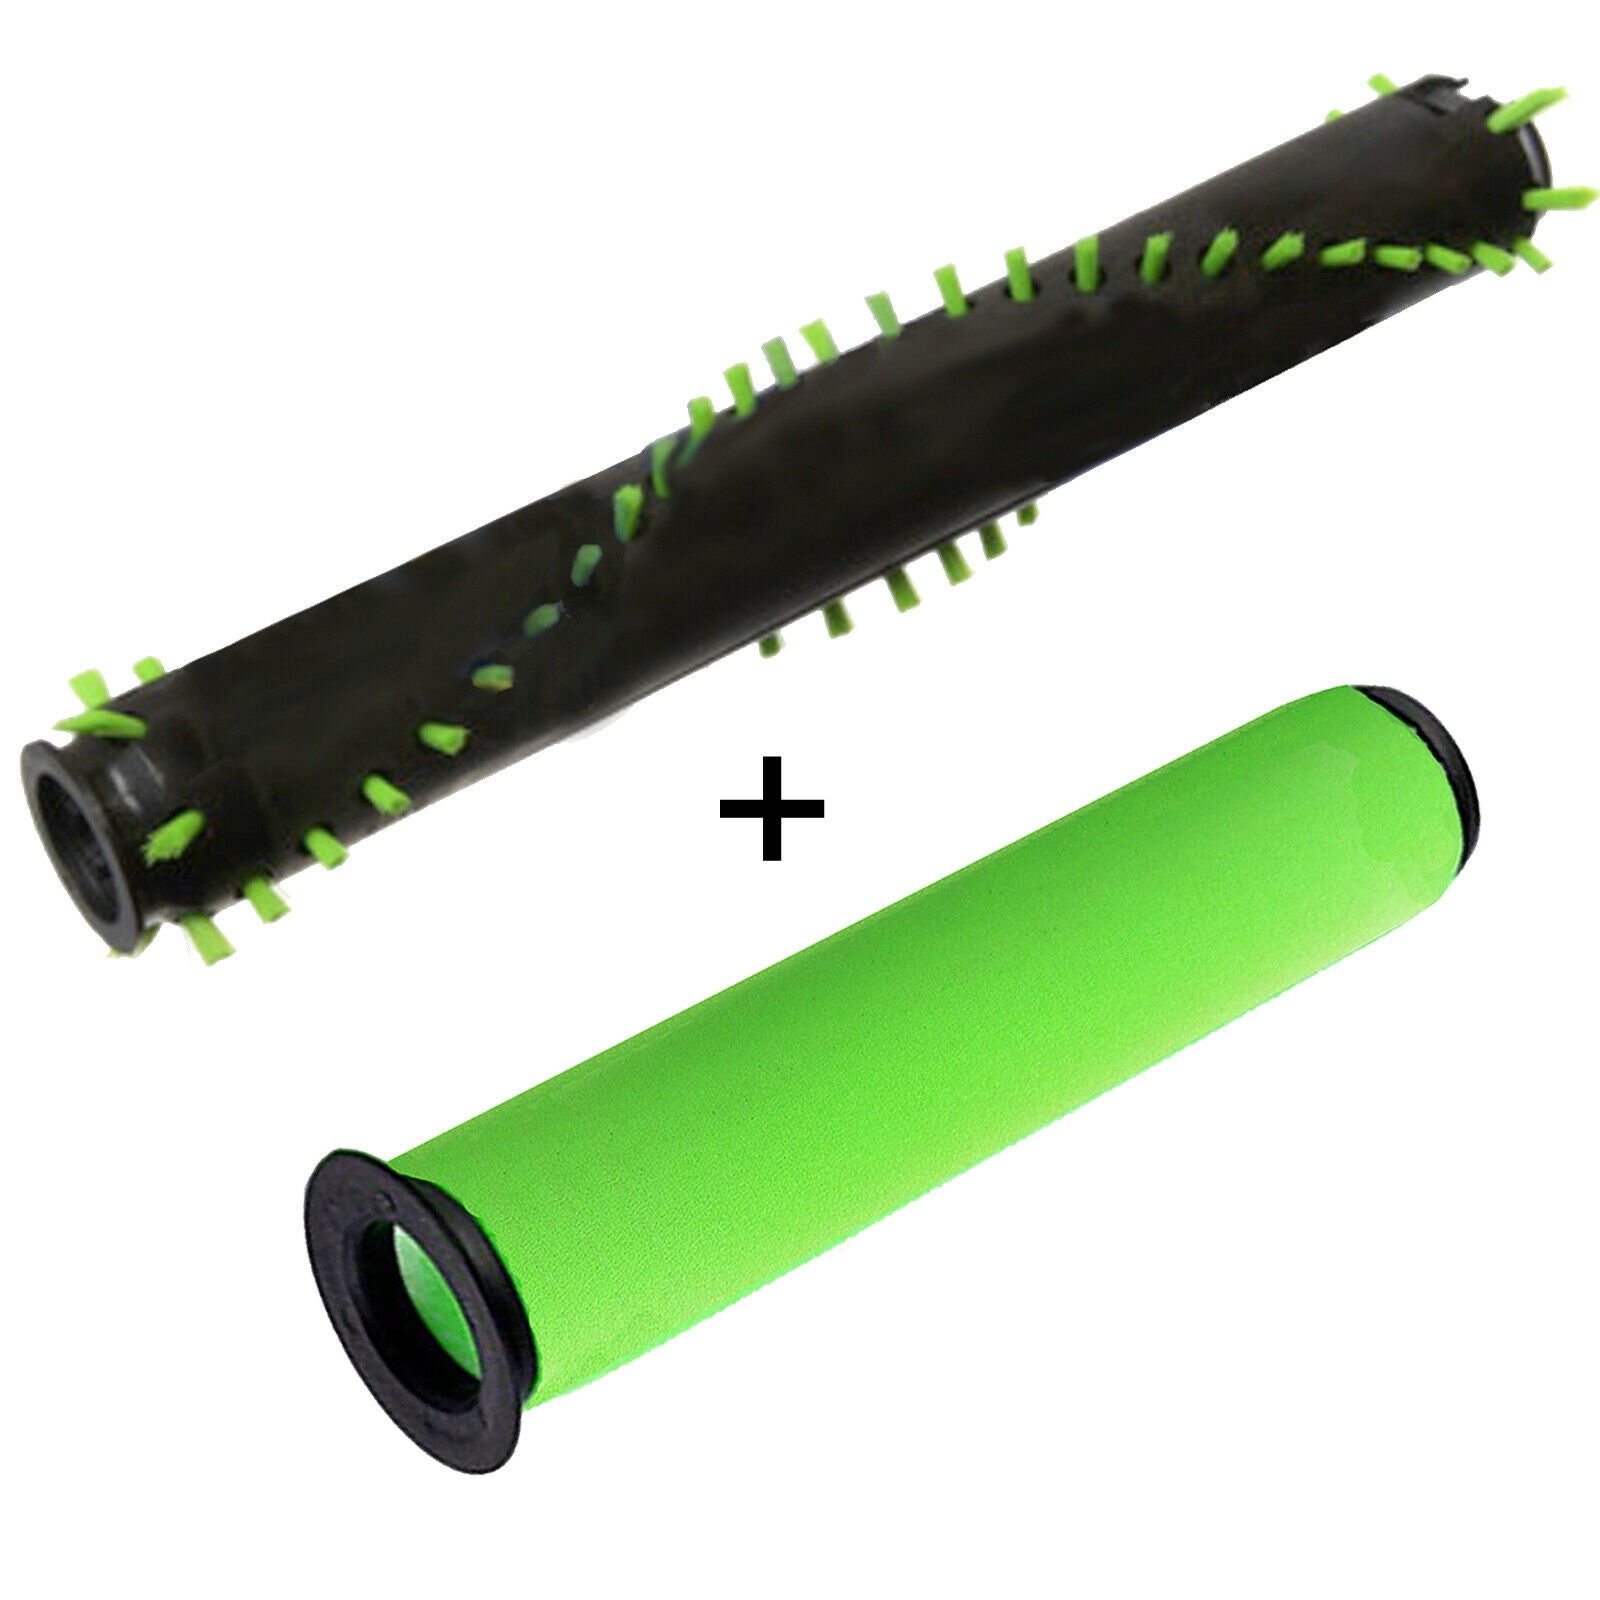 Brushroll + Washable Filter + Brush for GTECH AIRRAM MK2 K9 Cordless Vacuum Cleaner